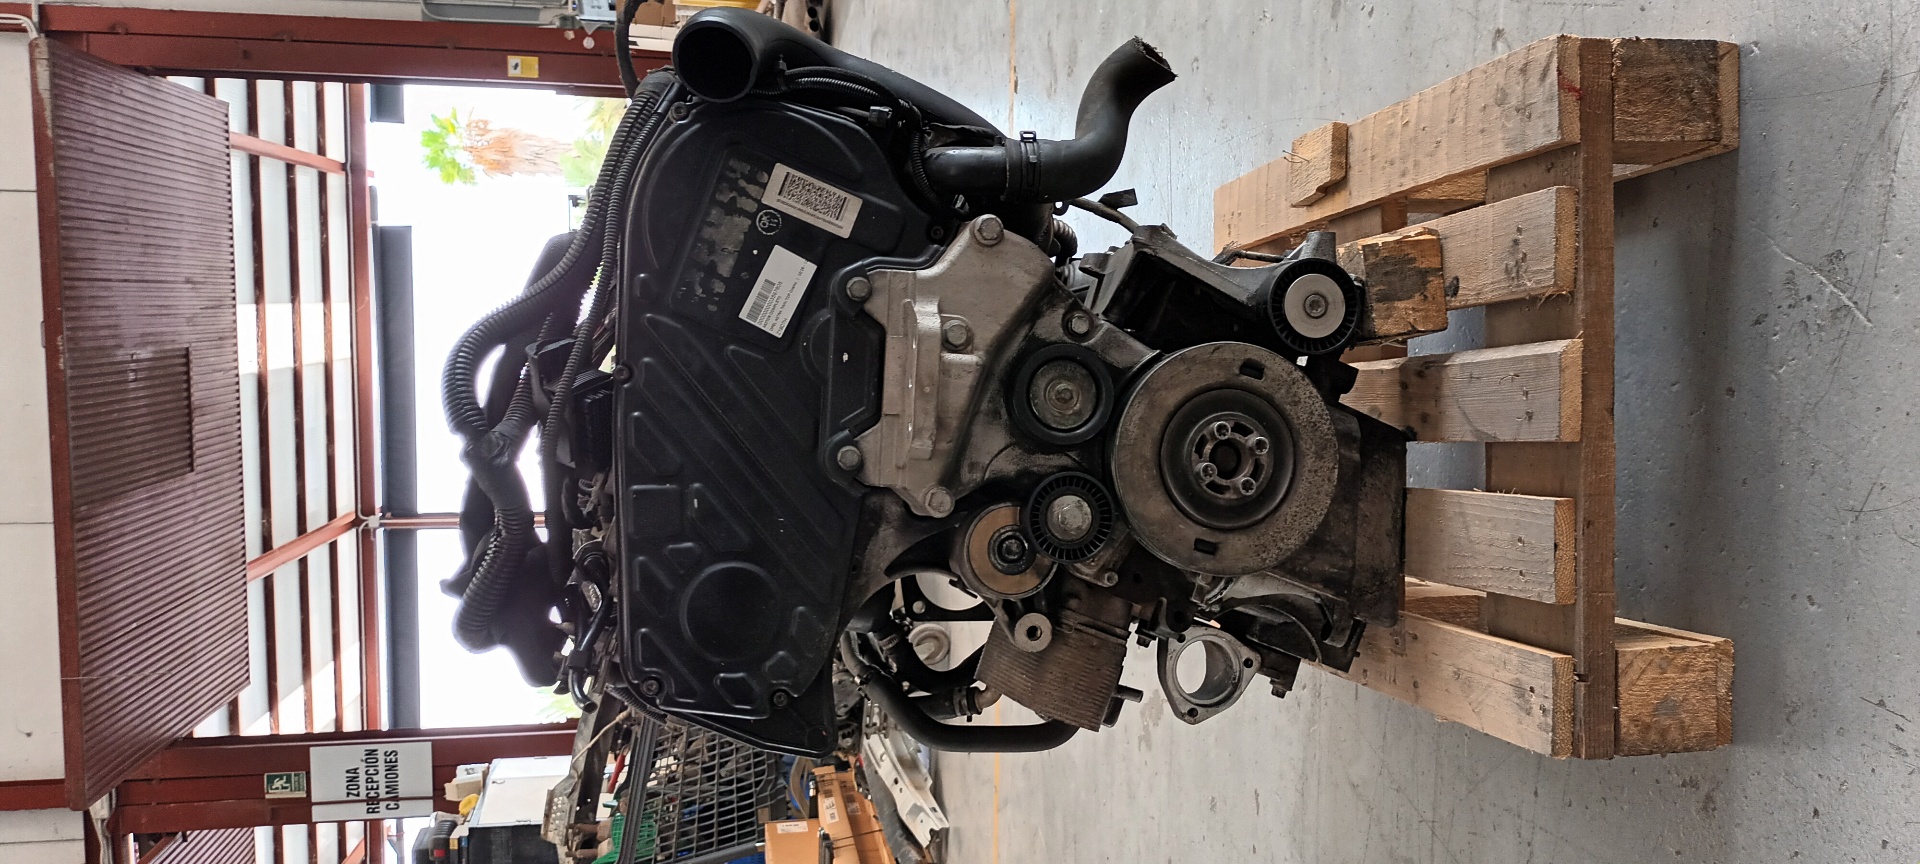 OPEL Astra H (2004-2014) Двигатель Z19DTH 22012883